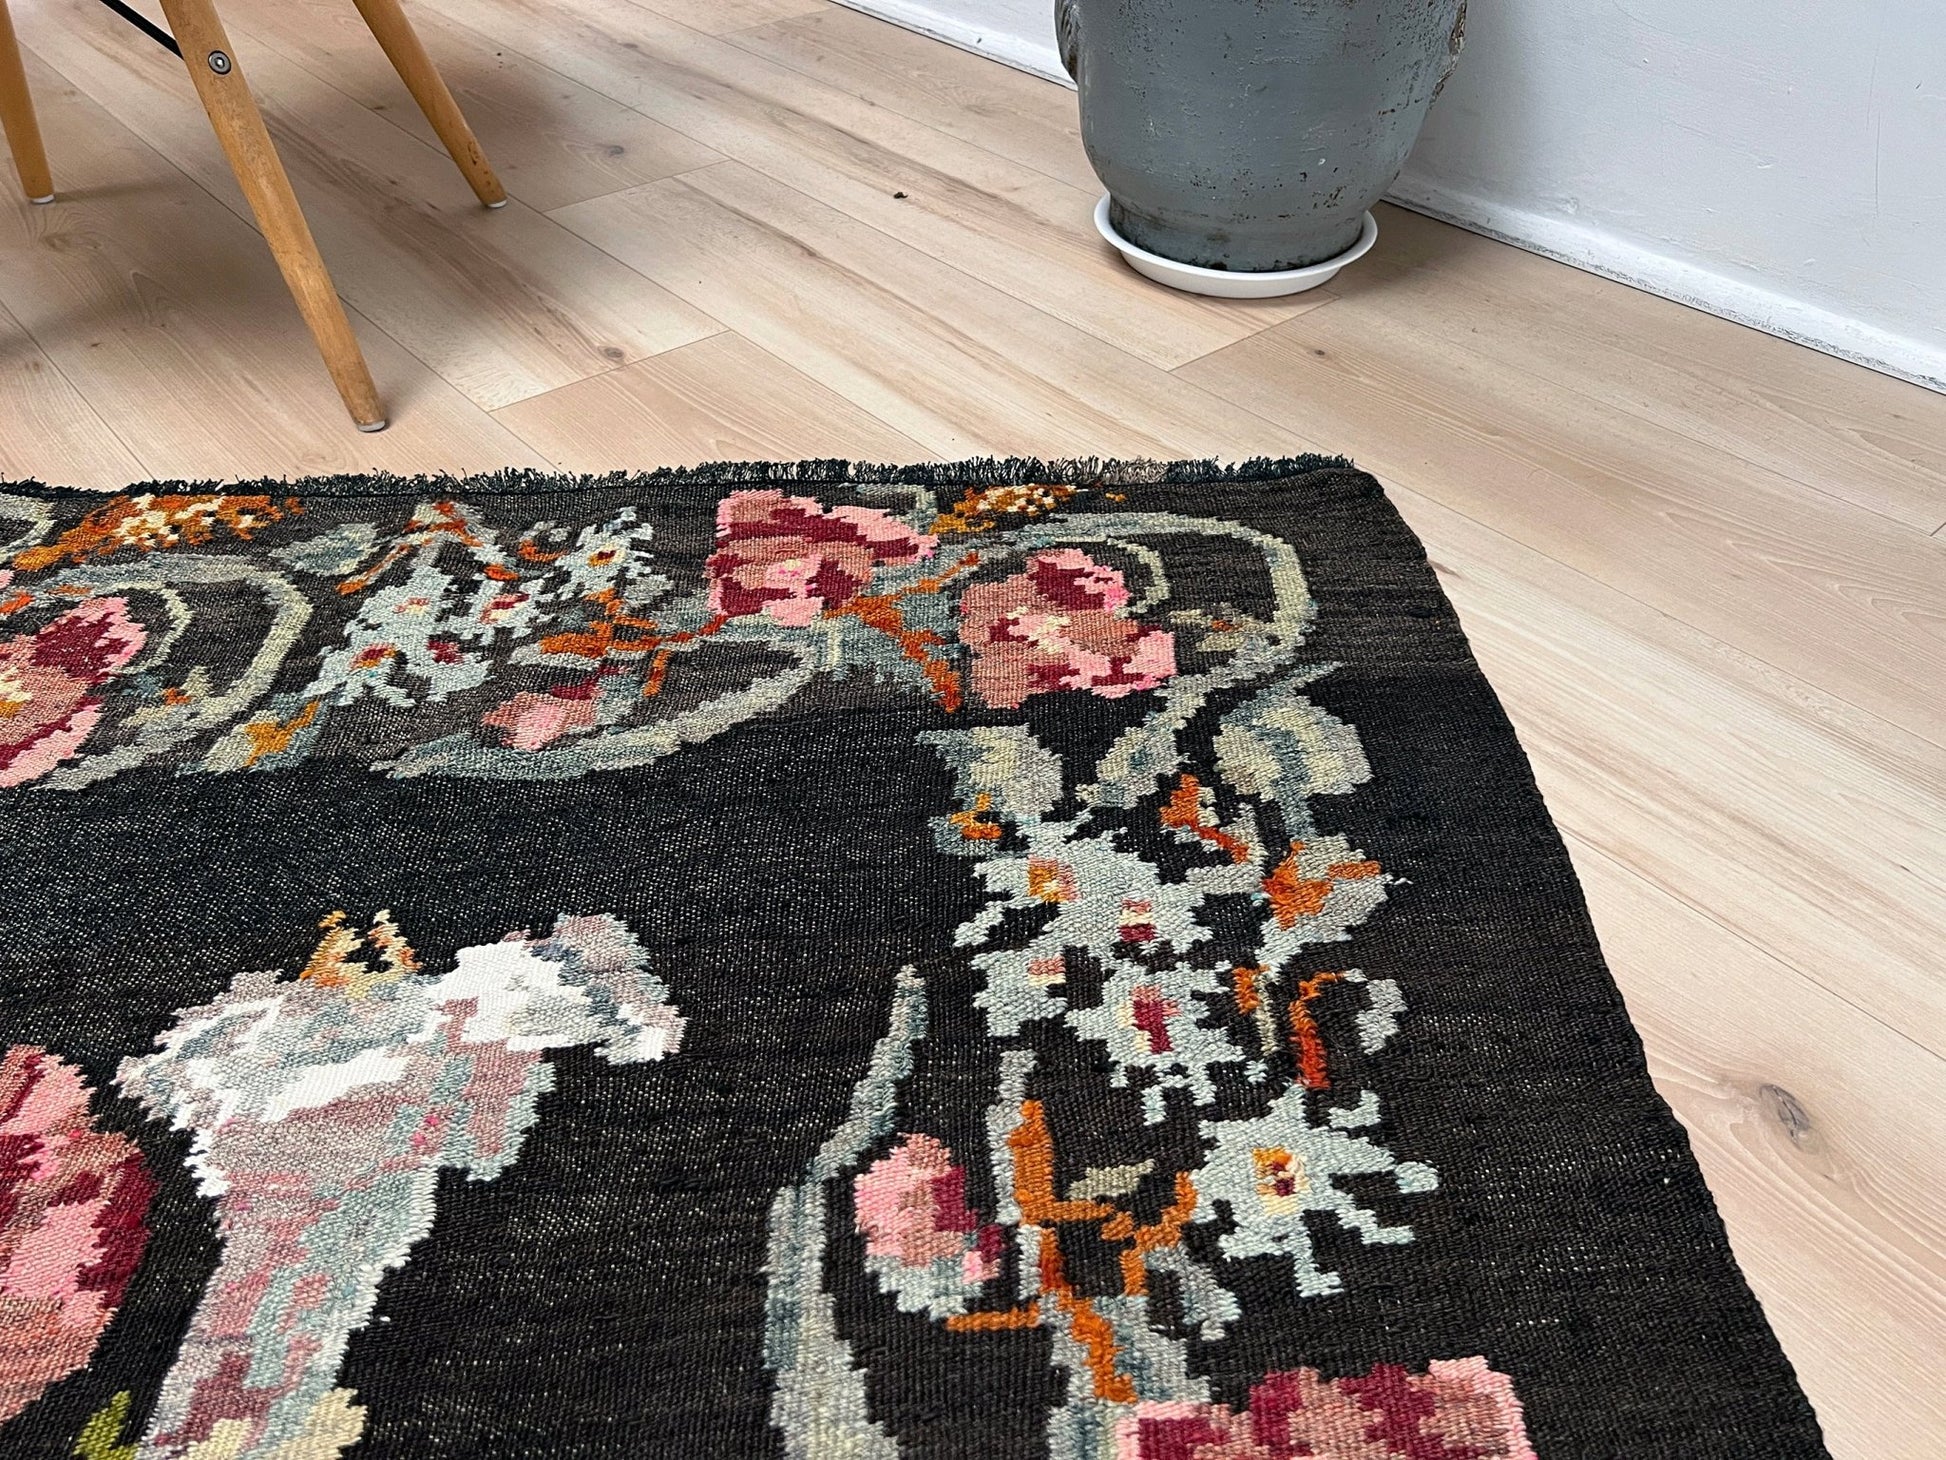 6x8 ft handmade lack vintage rug. Moldovan kilim vibrant colors. Kilim rug shop san francisco bay area. Black Rug for livinig room, bedroom, dining, kitchen.